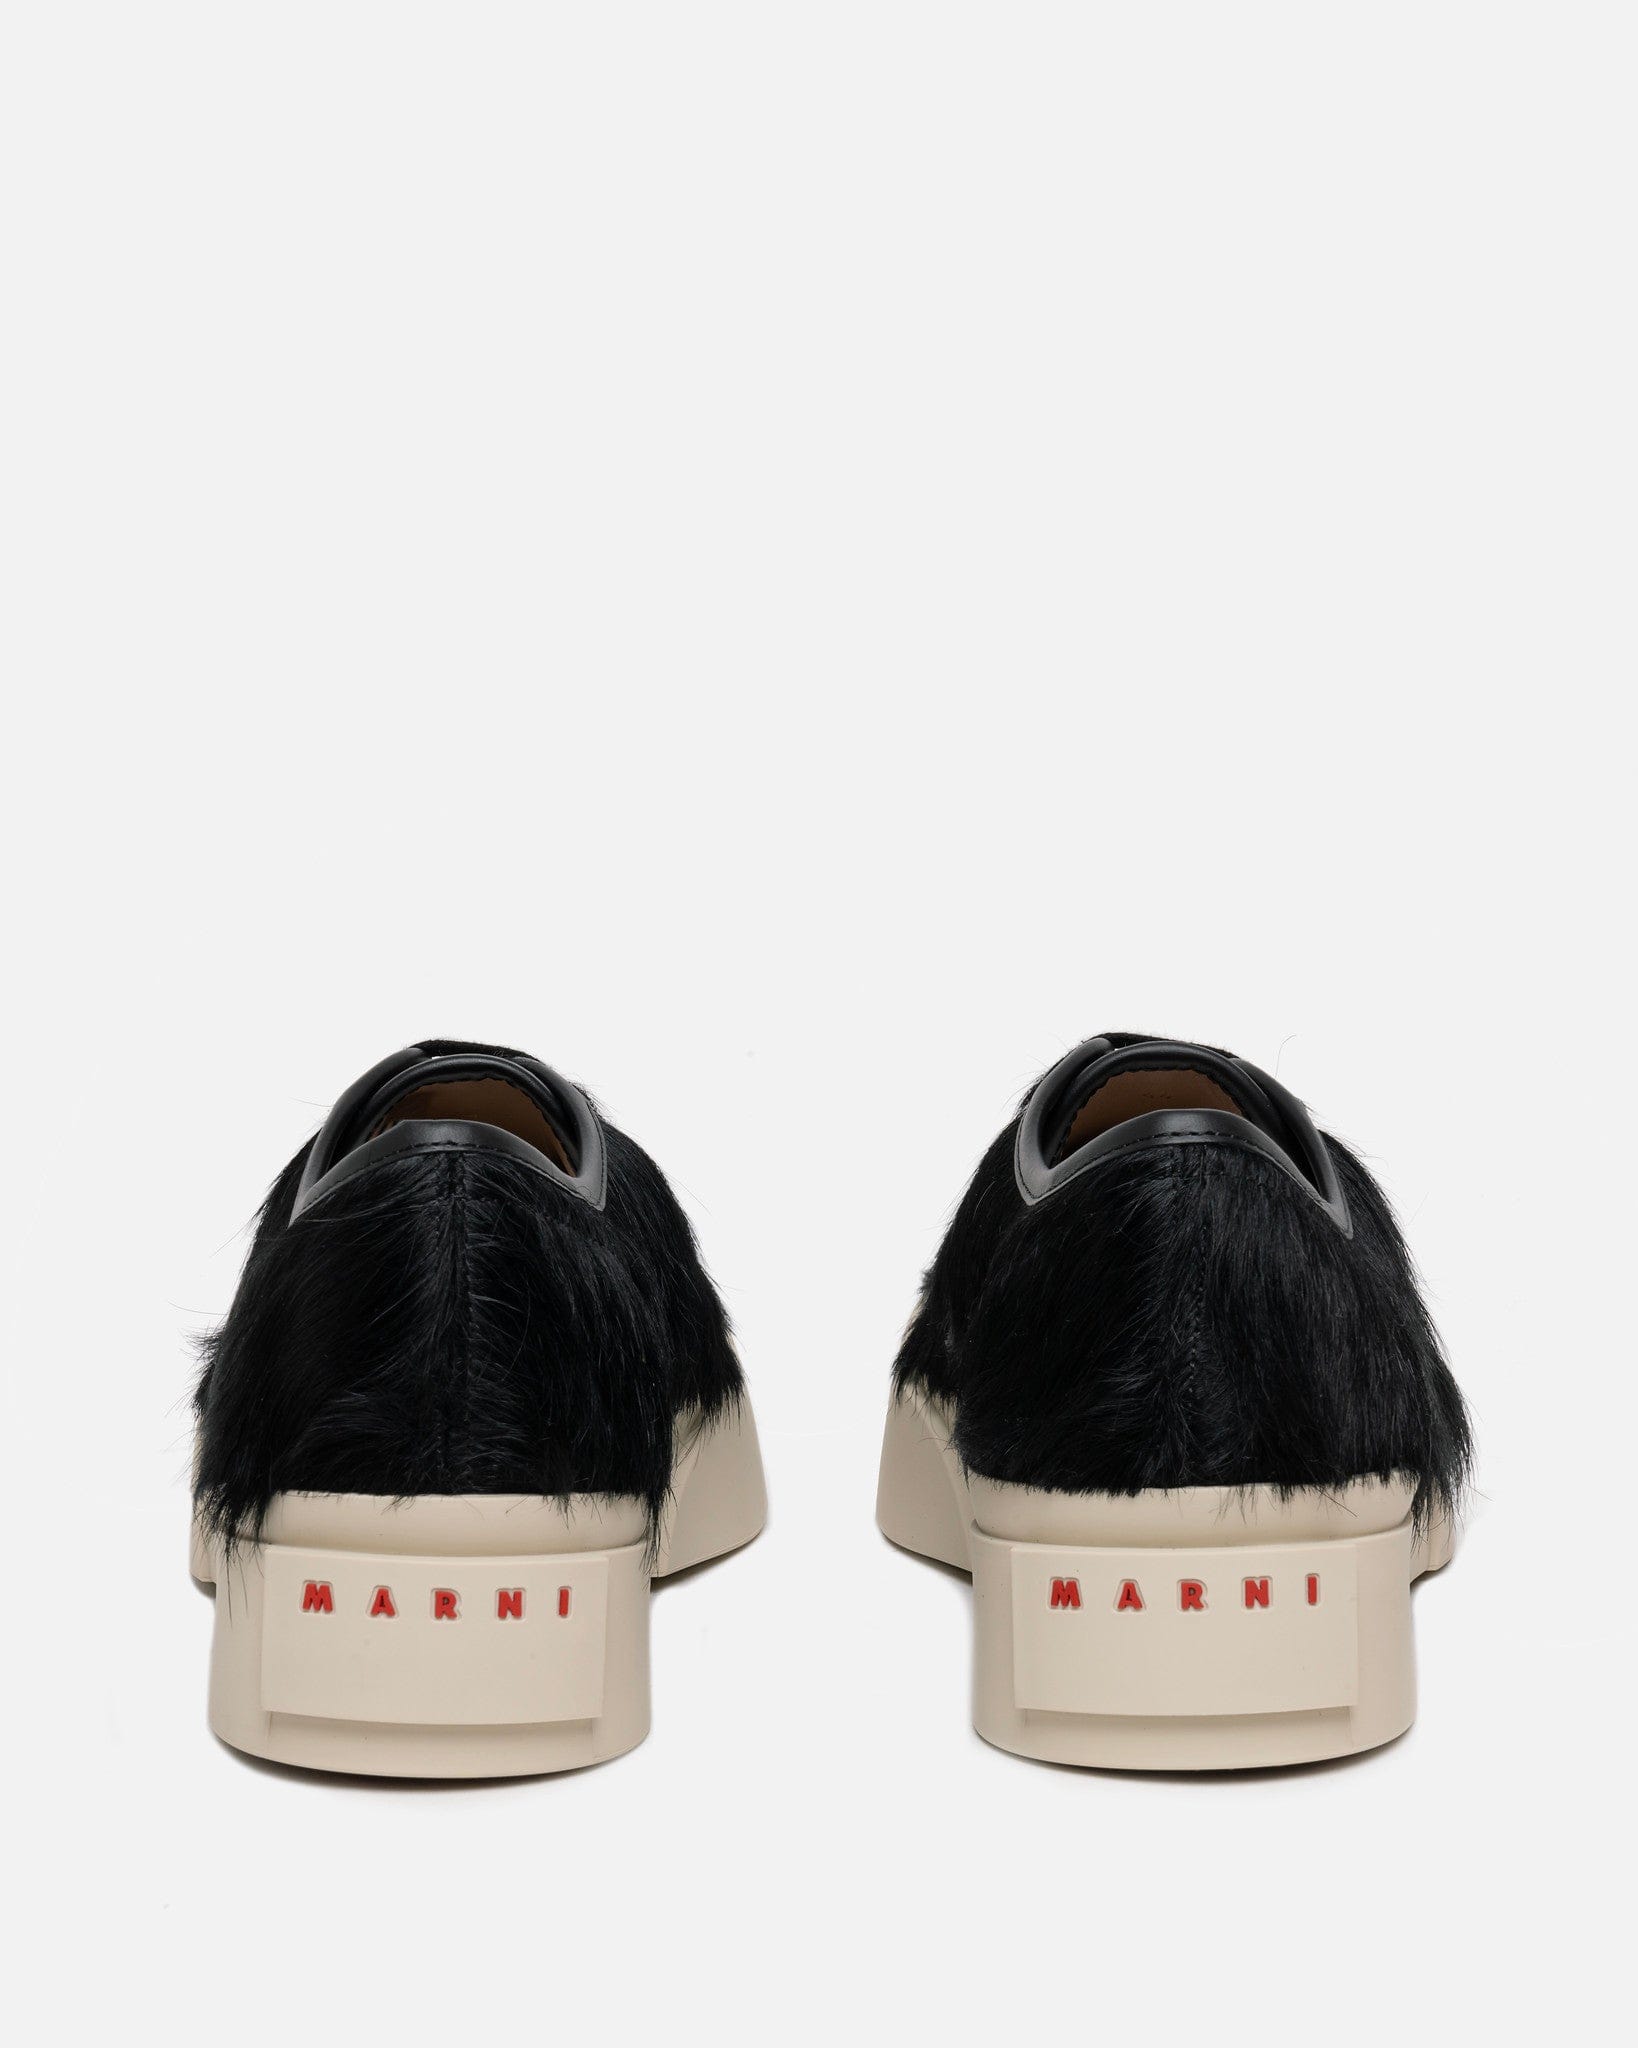 Marni Men's Shoes Long Calf-Hair Pablo Sneaker in Black